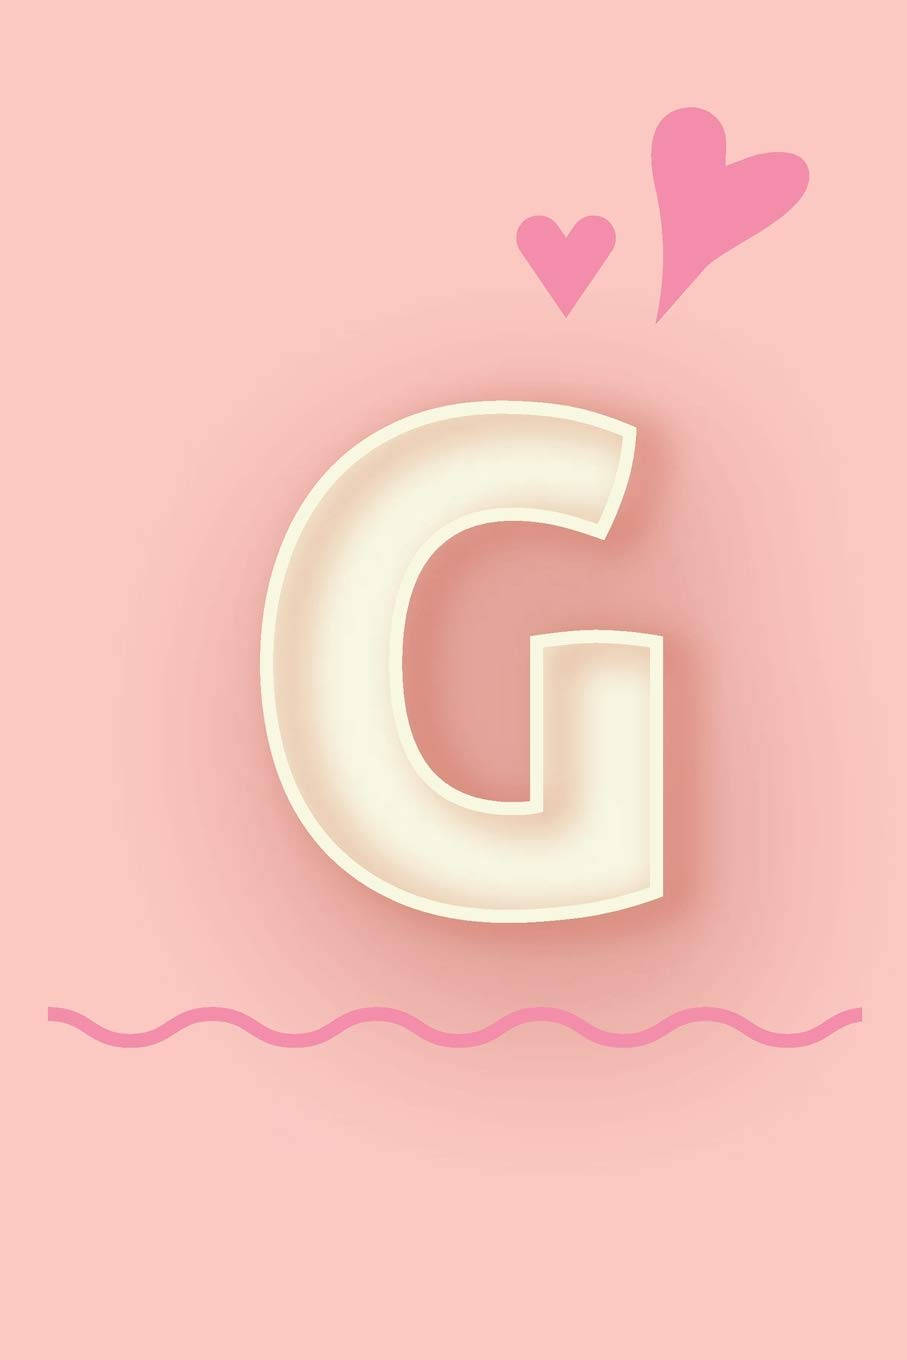 Pastel Pink Letter G Wallpaper